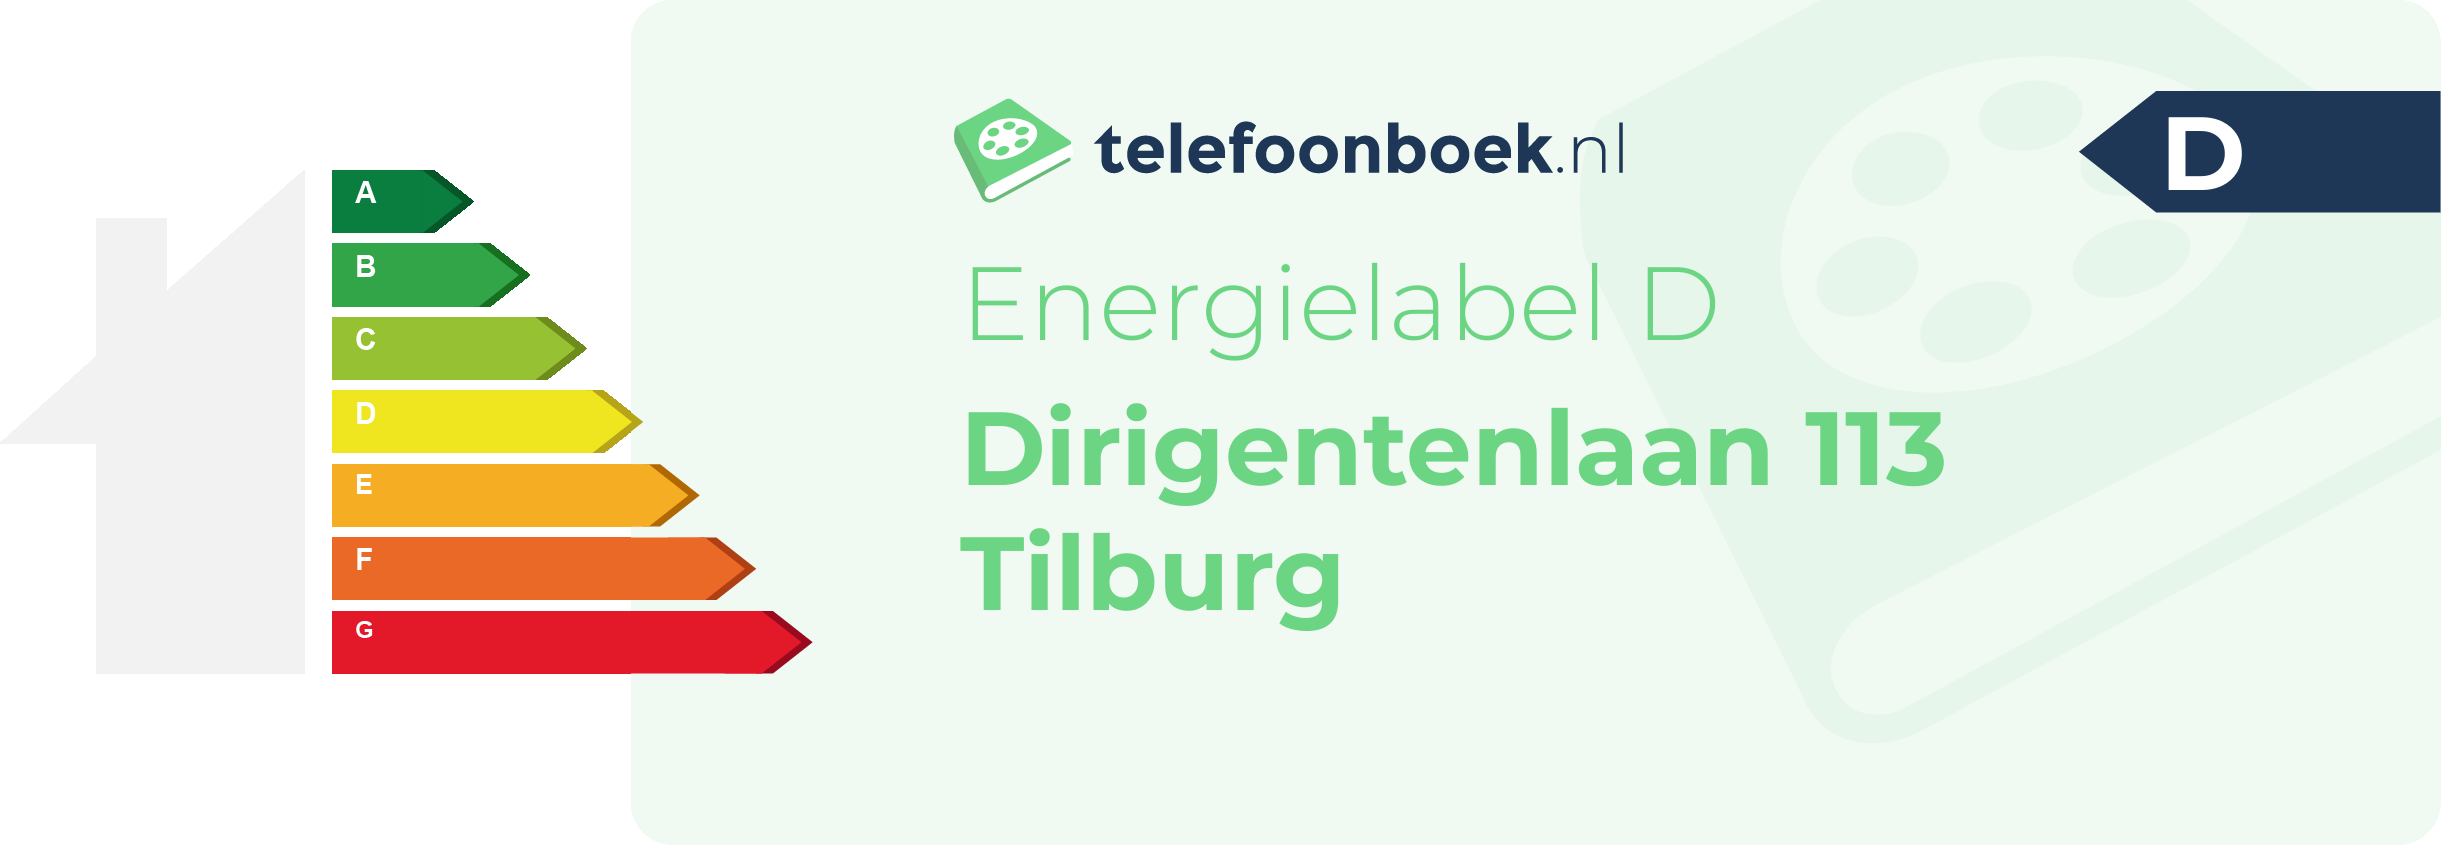 Energielabel Dirigentenlaan 113 Tilburg